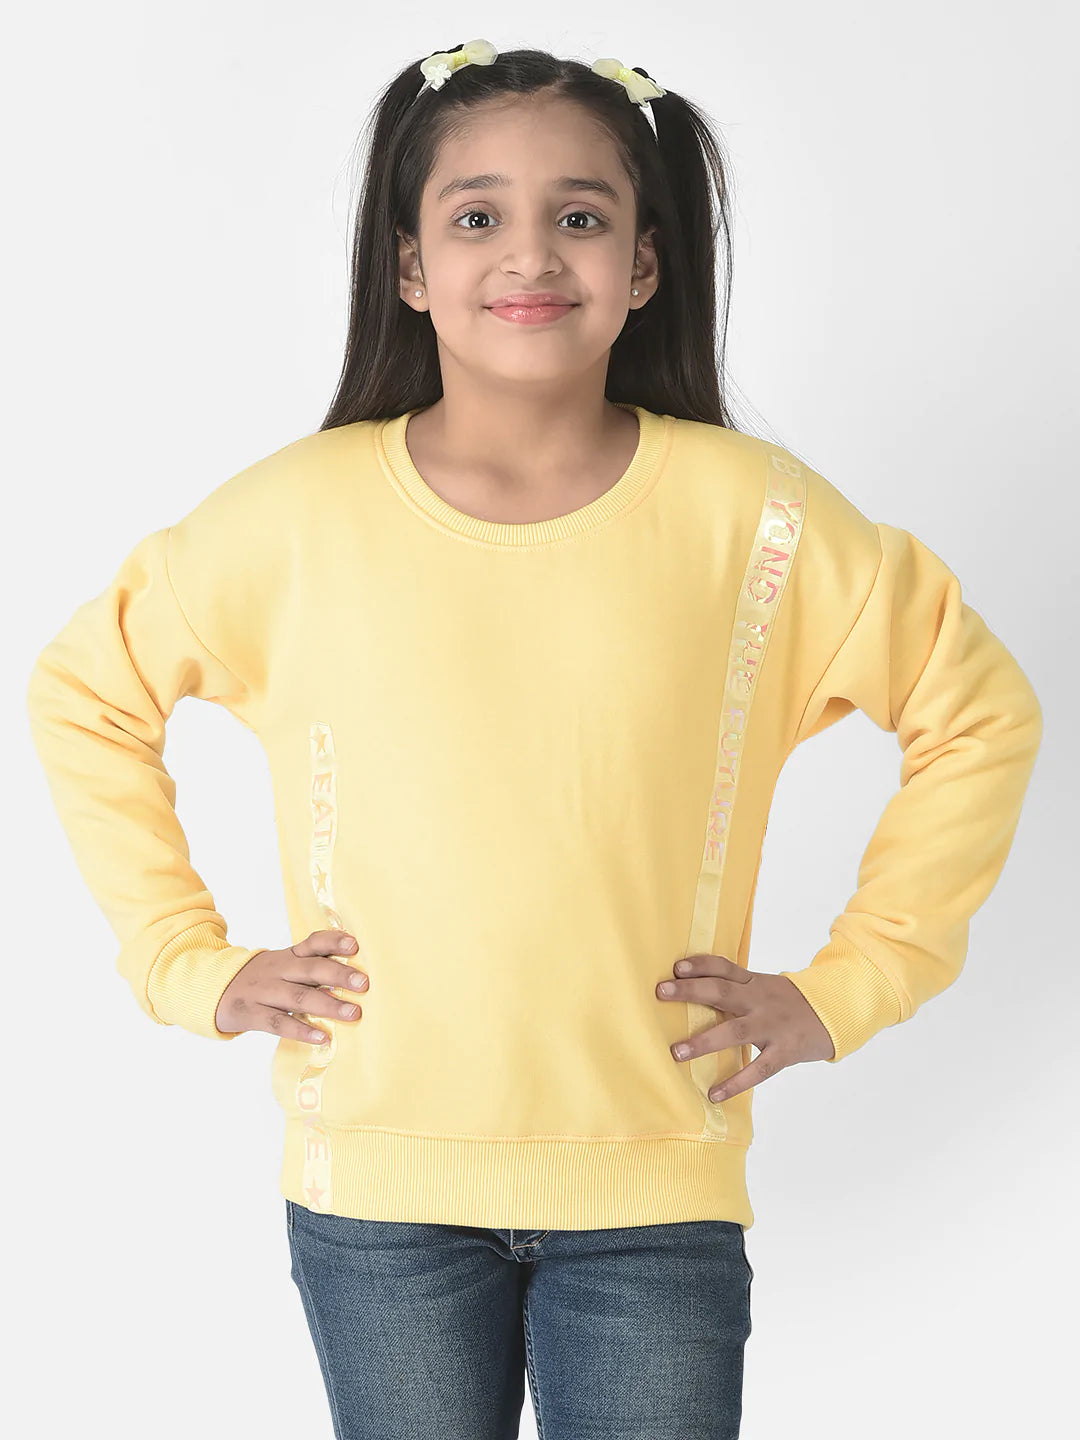  Minimalist Yellow Sweatshirt